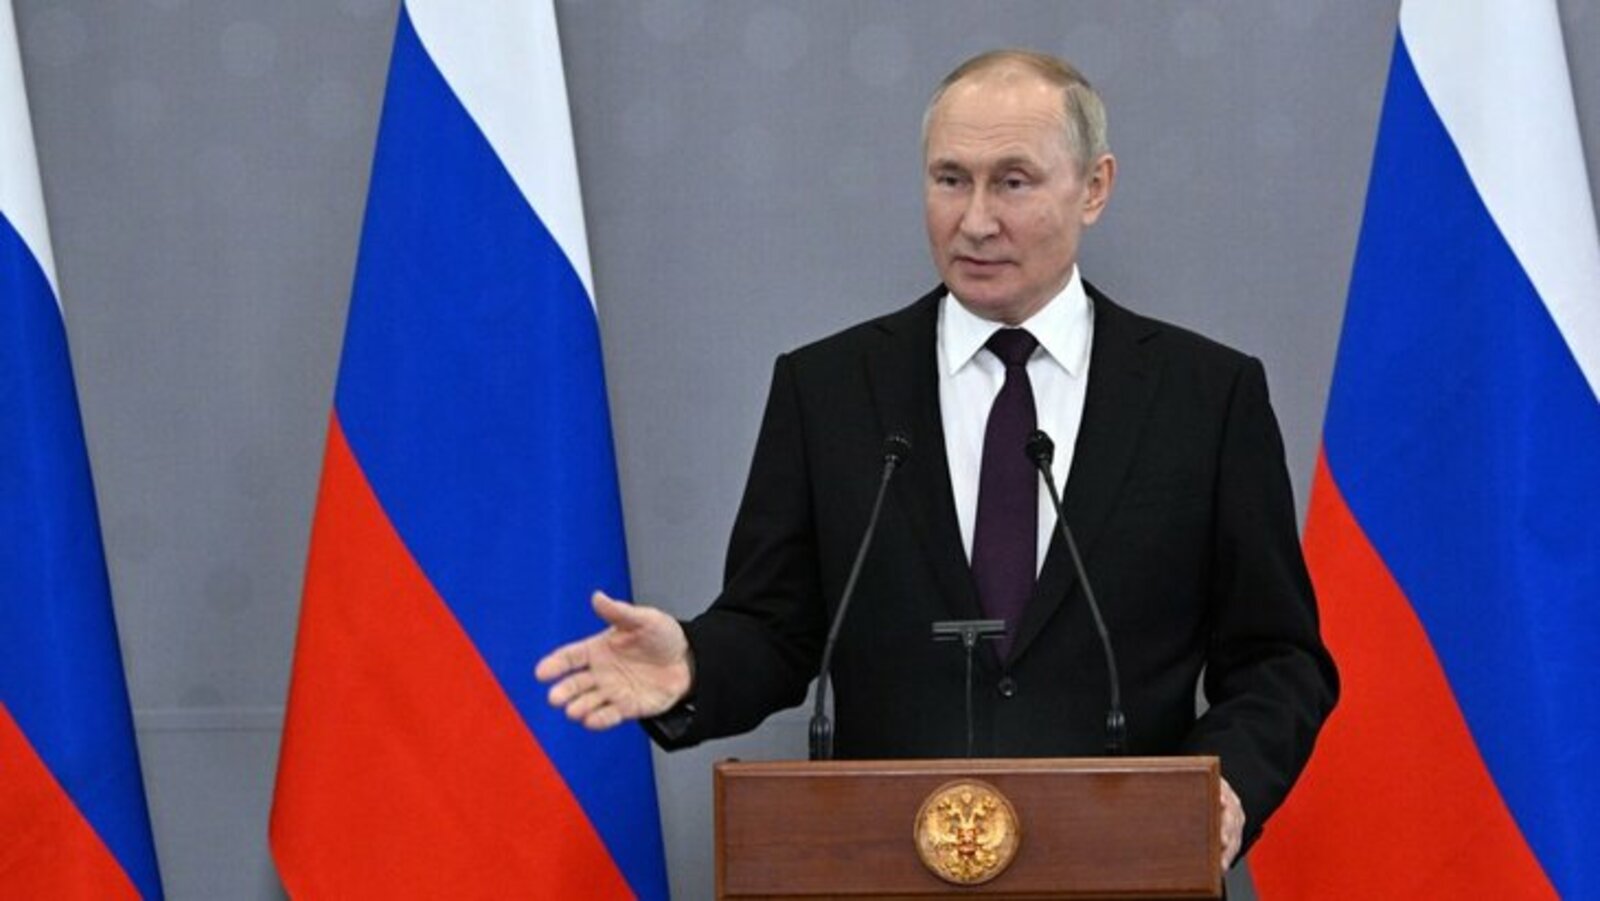 Пенсионеры из-за кредитов превращаются в вечных должников, заявил Путин